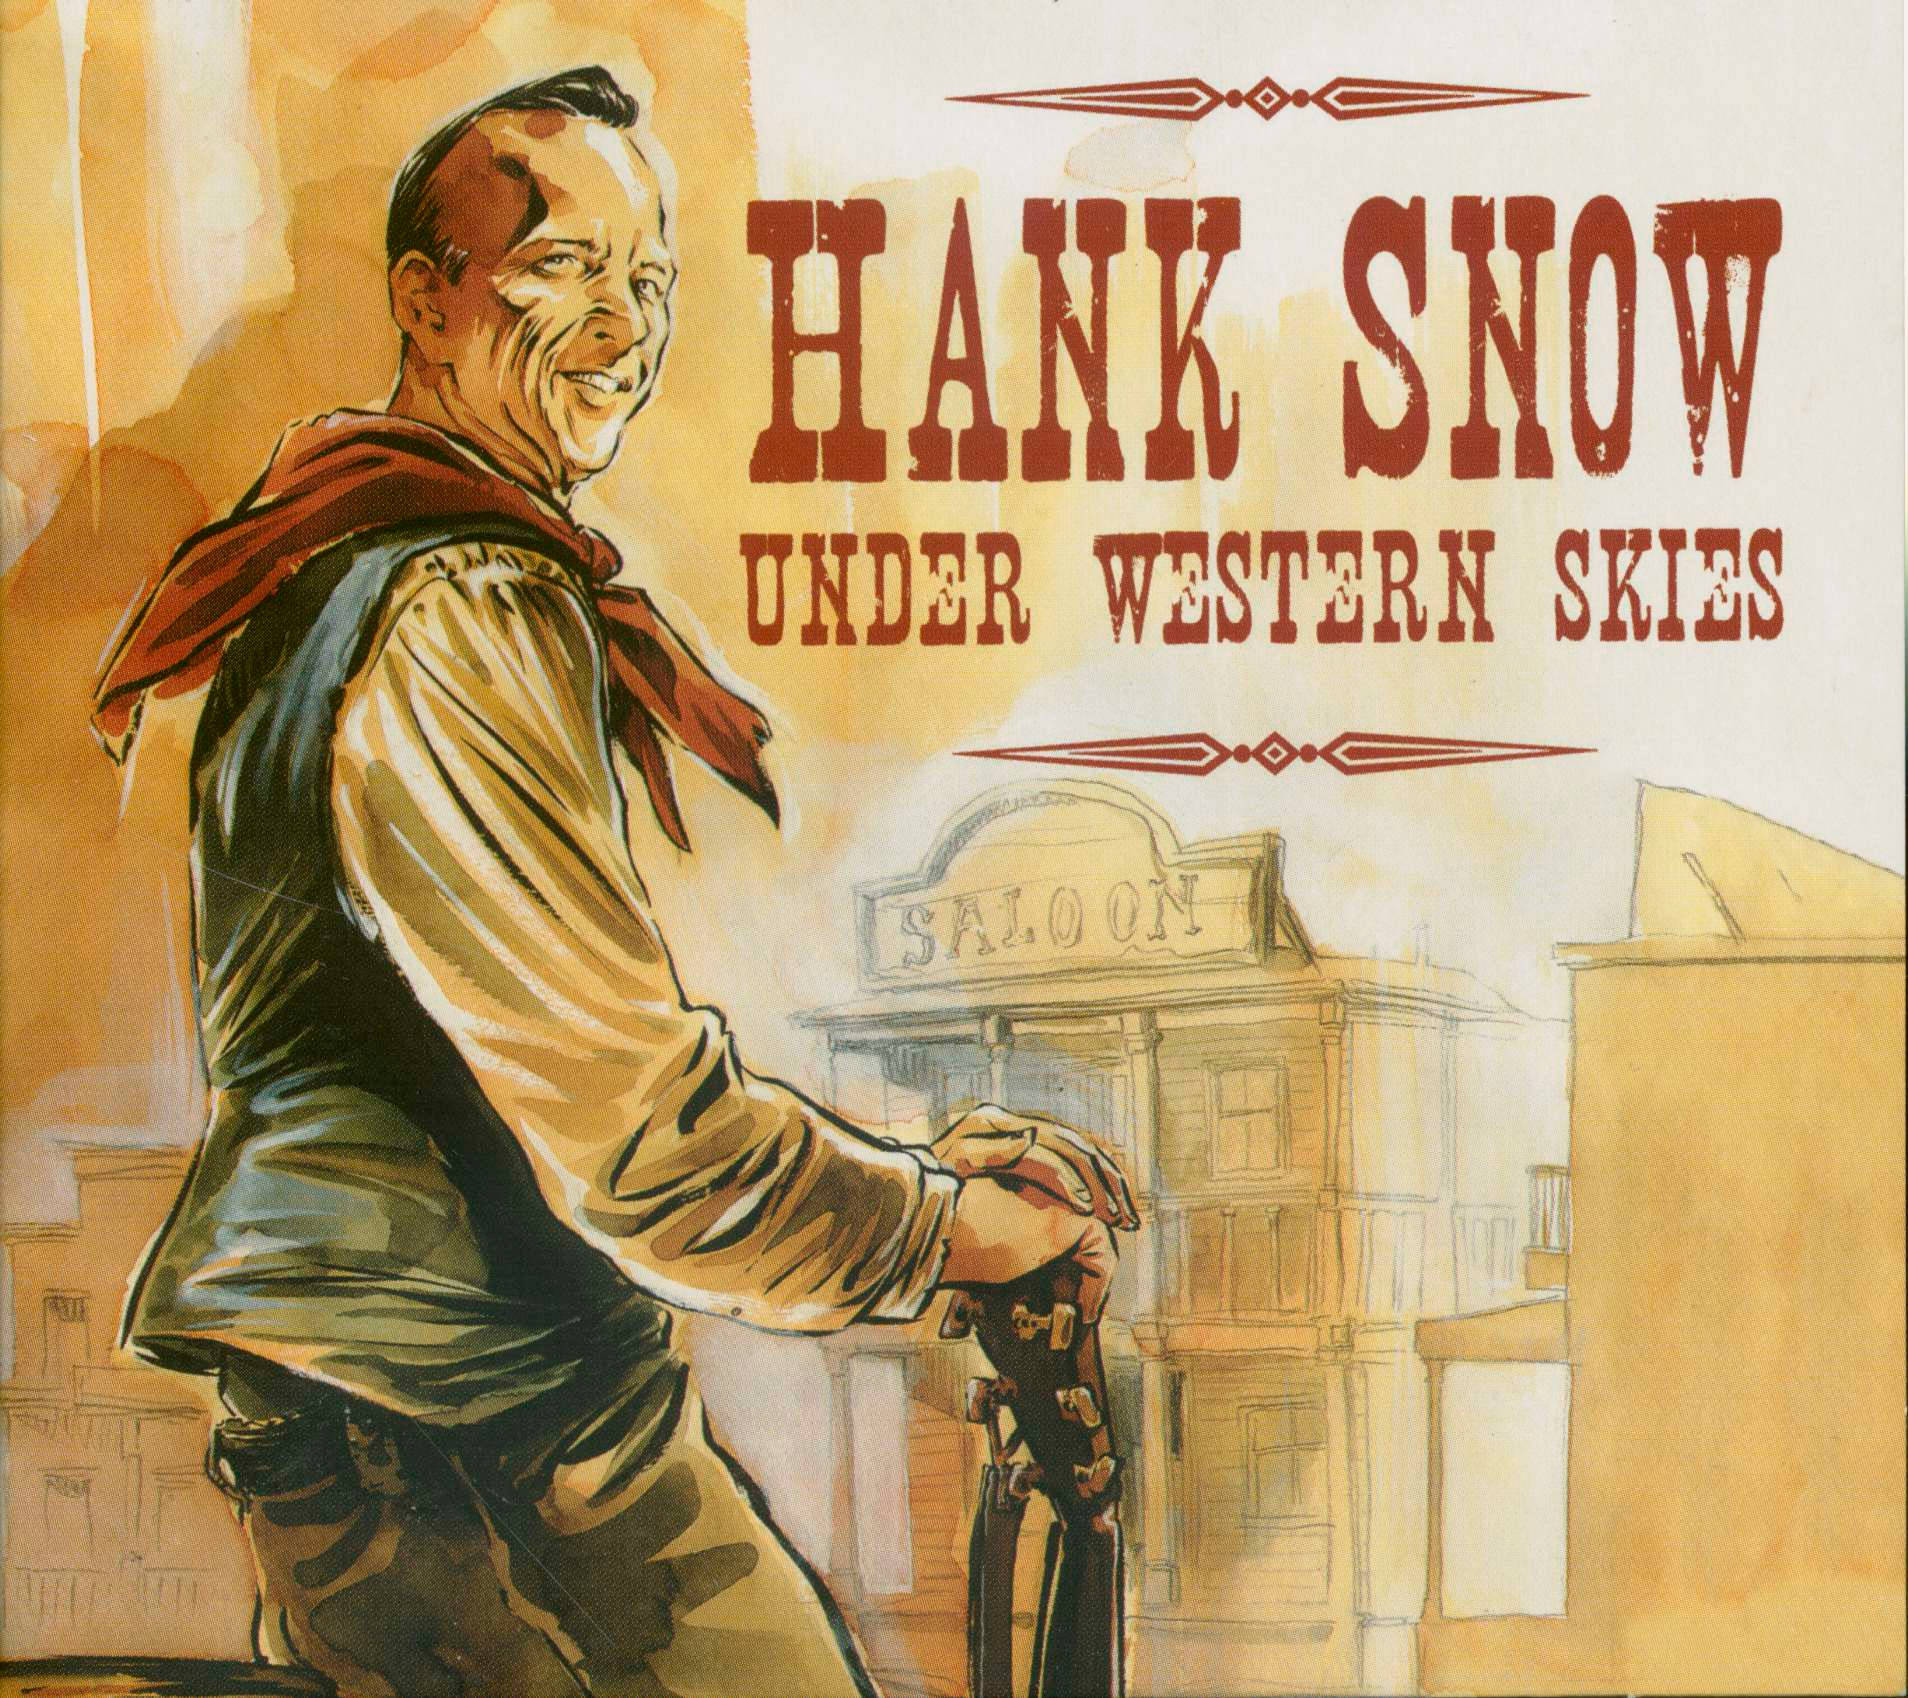 Hank Snow Under Western Skies Art Wallpaper